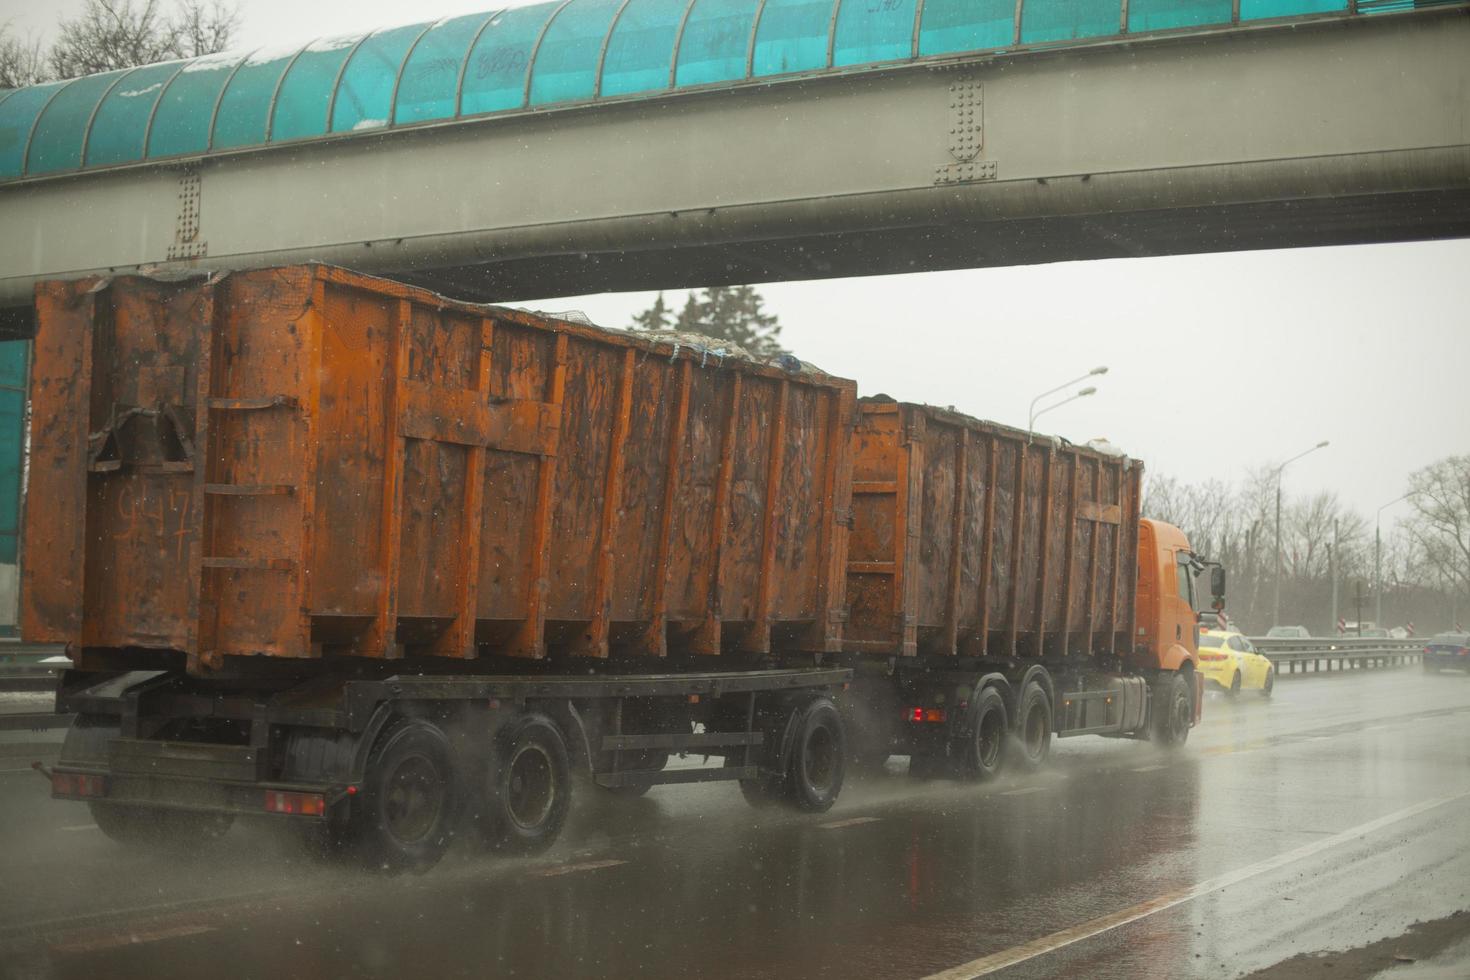 caminhão com corpo laranja. grande reboque. transporte de resíduos. foto